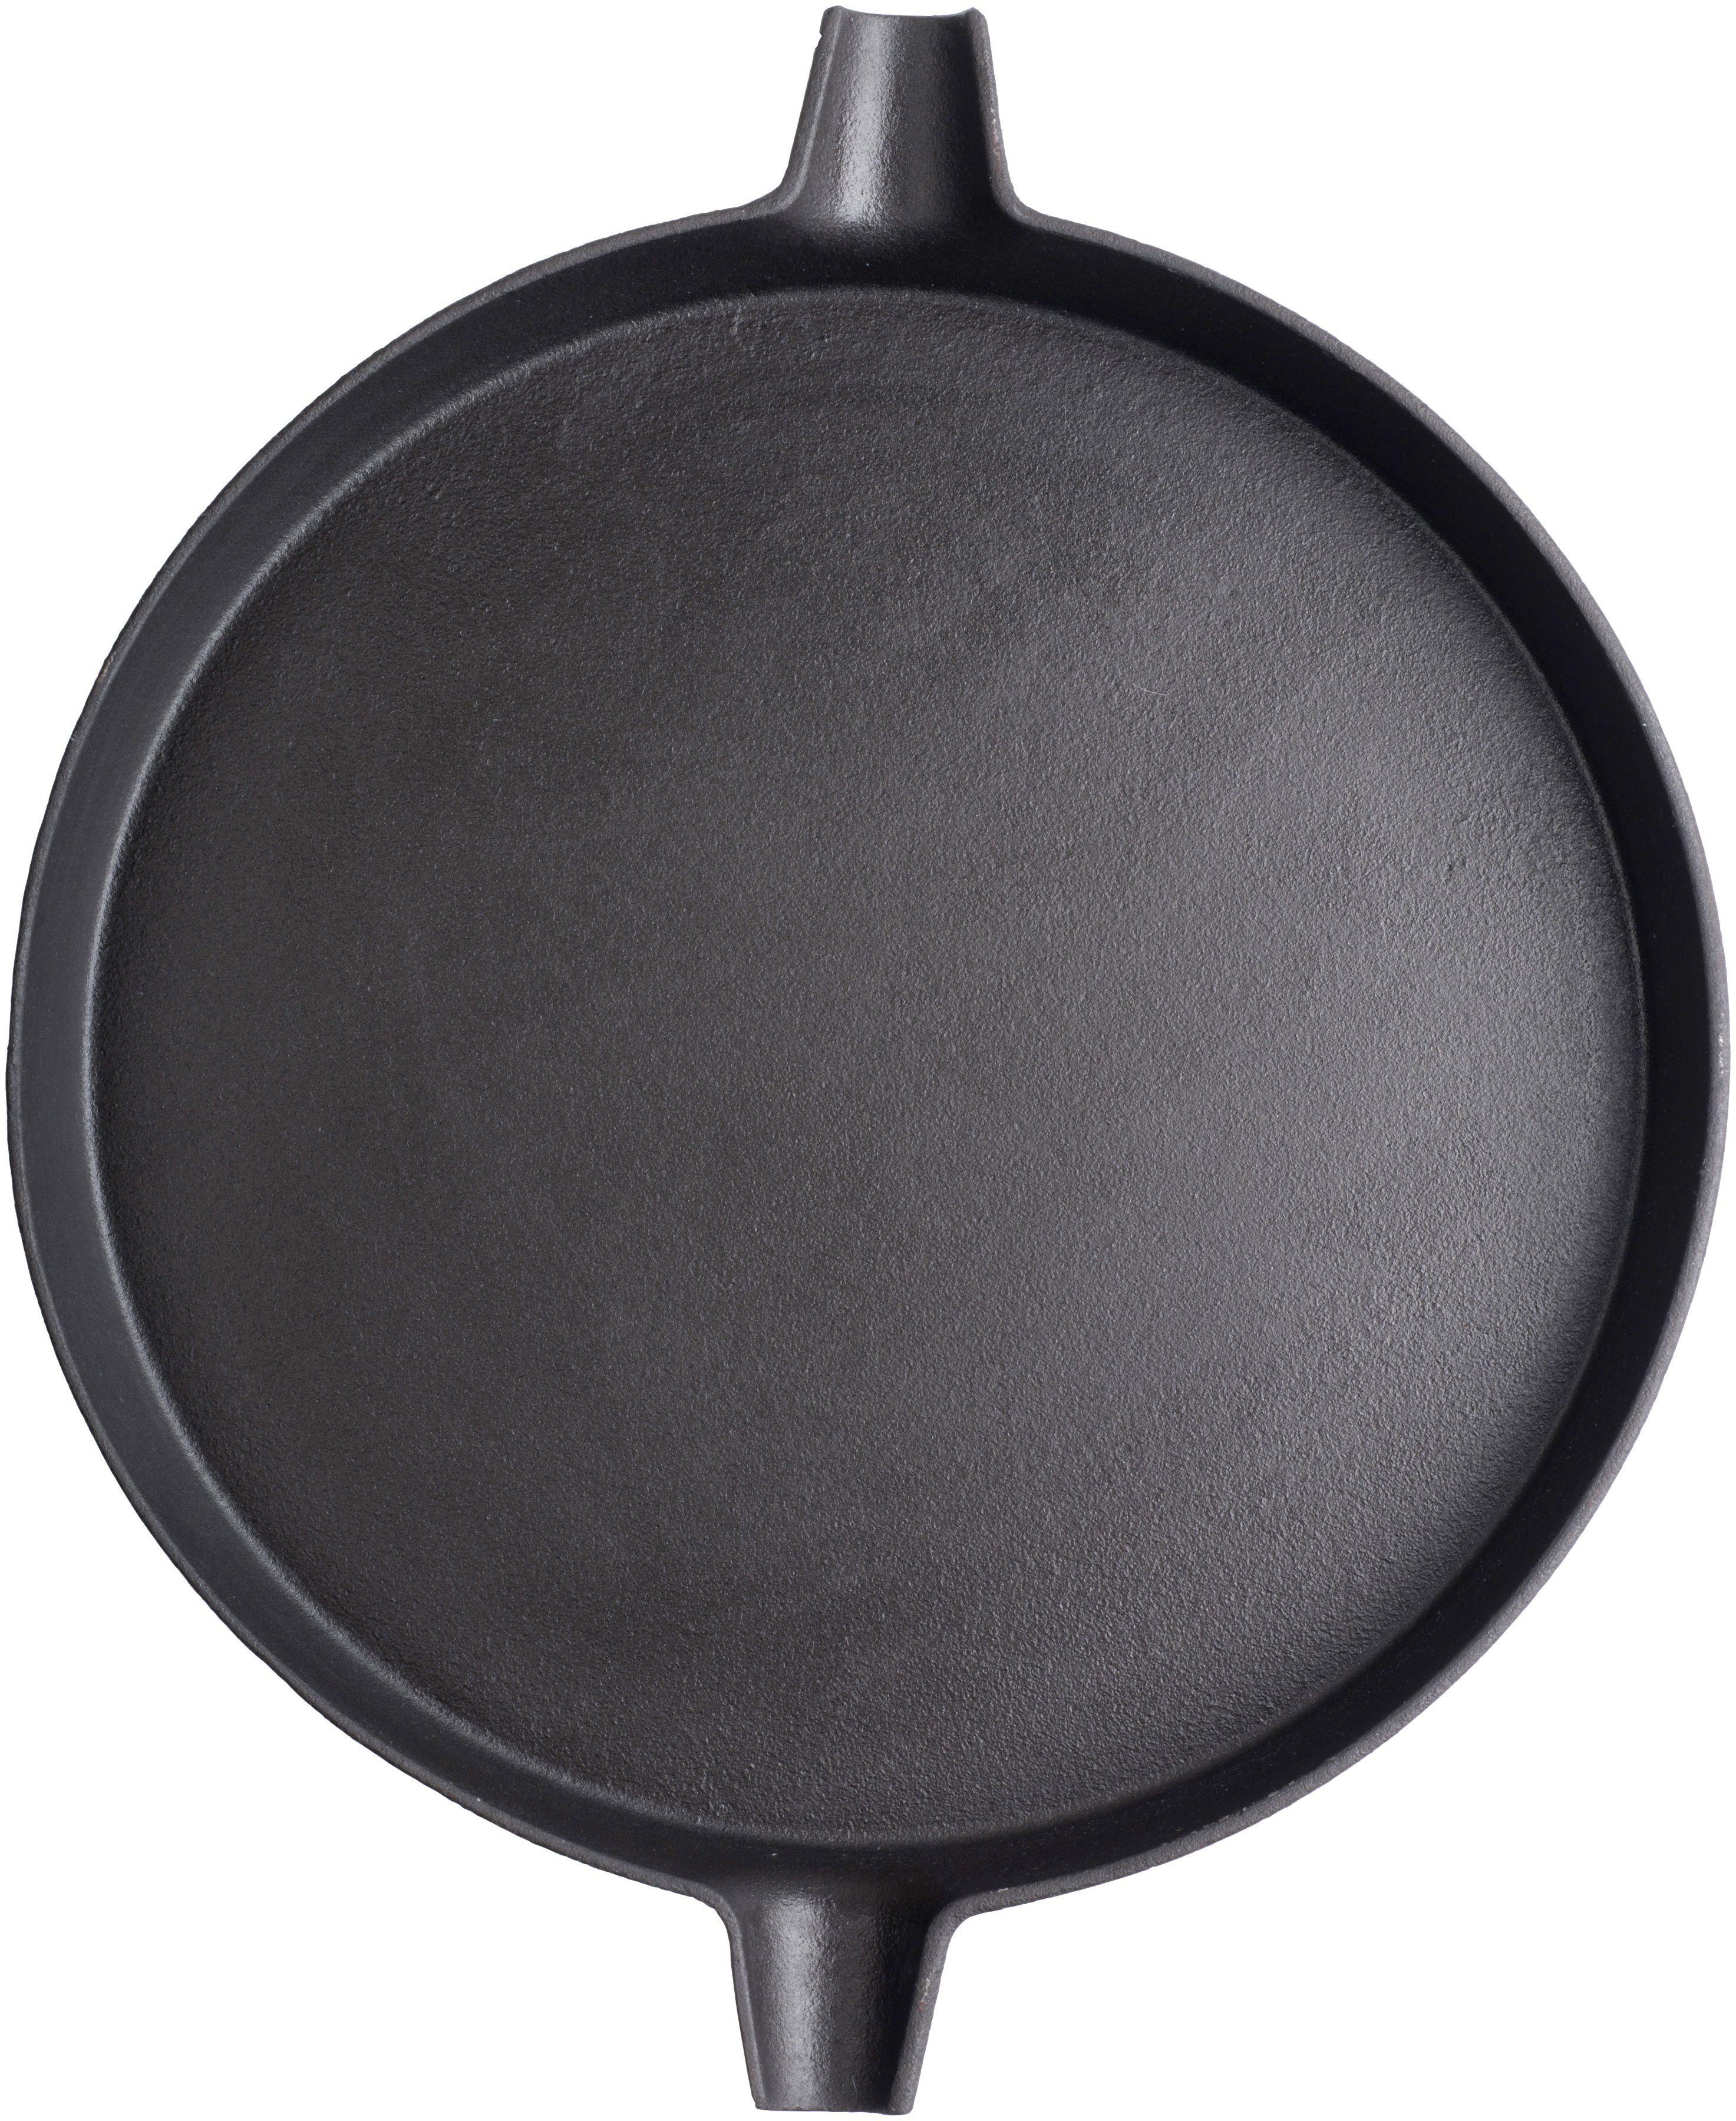 Grillpfanne, 31,7 Durchmesser Gusseisen, Tepro cm